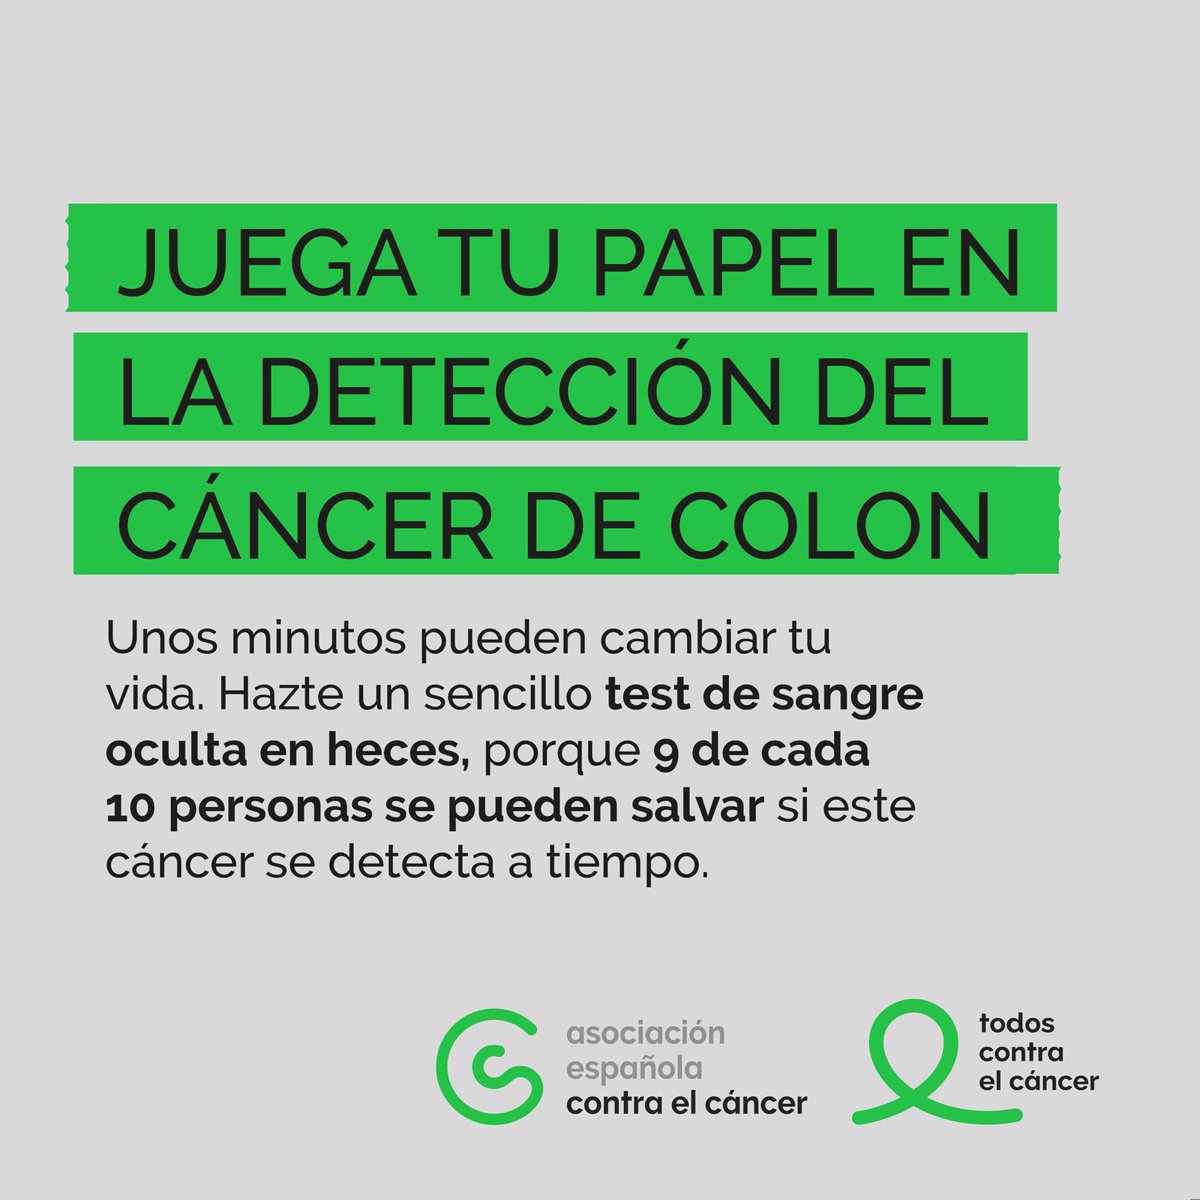 Extremadura registró el pasado año 964 nuevos casos de cáncer colorrectal, según la AECC